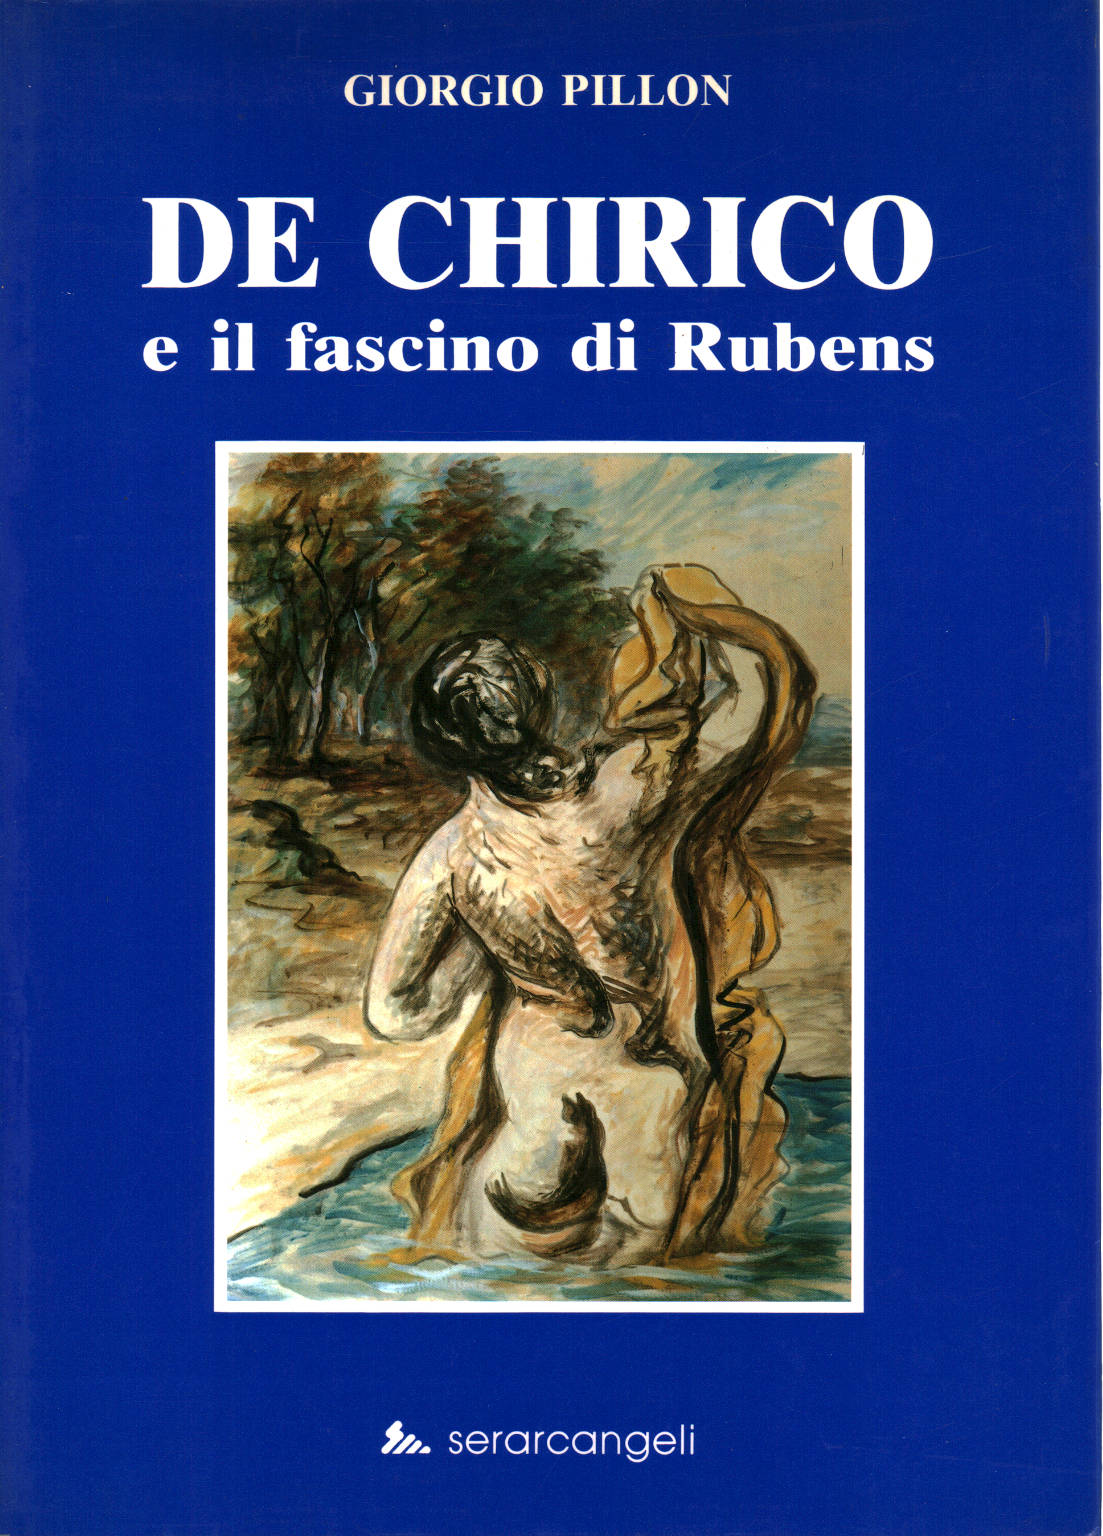 De Chirico und die faszination von Rubens, Georg Pillon